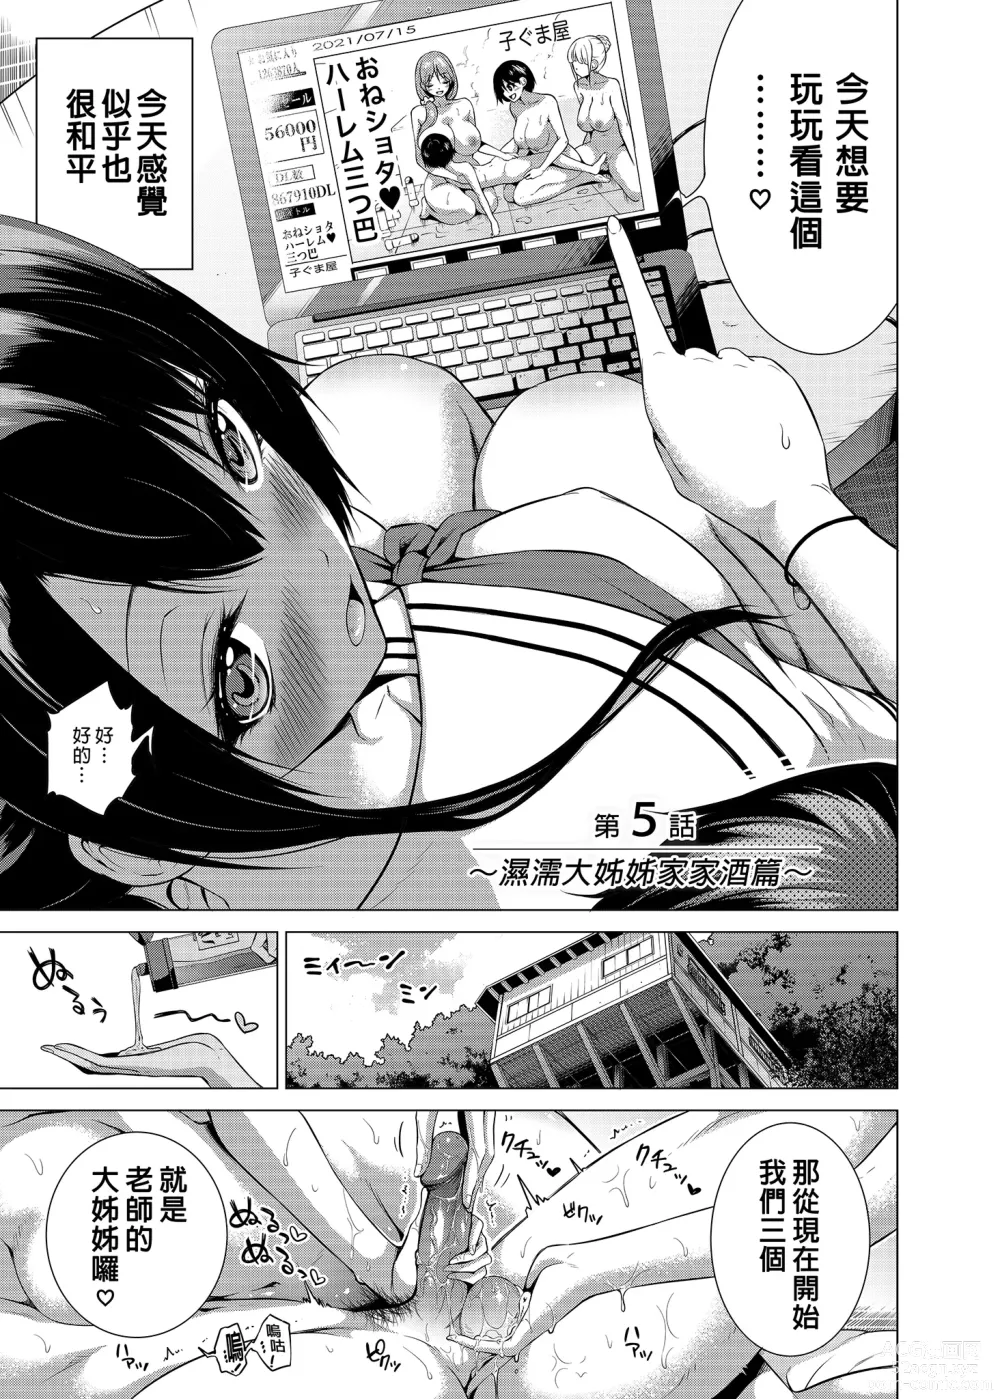 Page 8 of manga nanaka no rakuen5